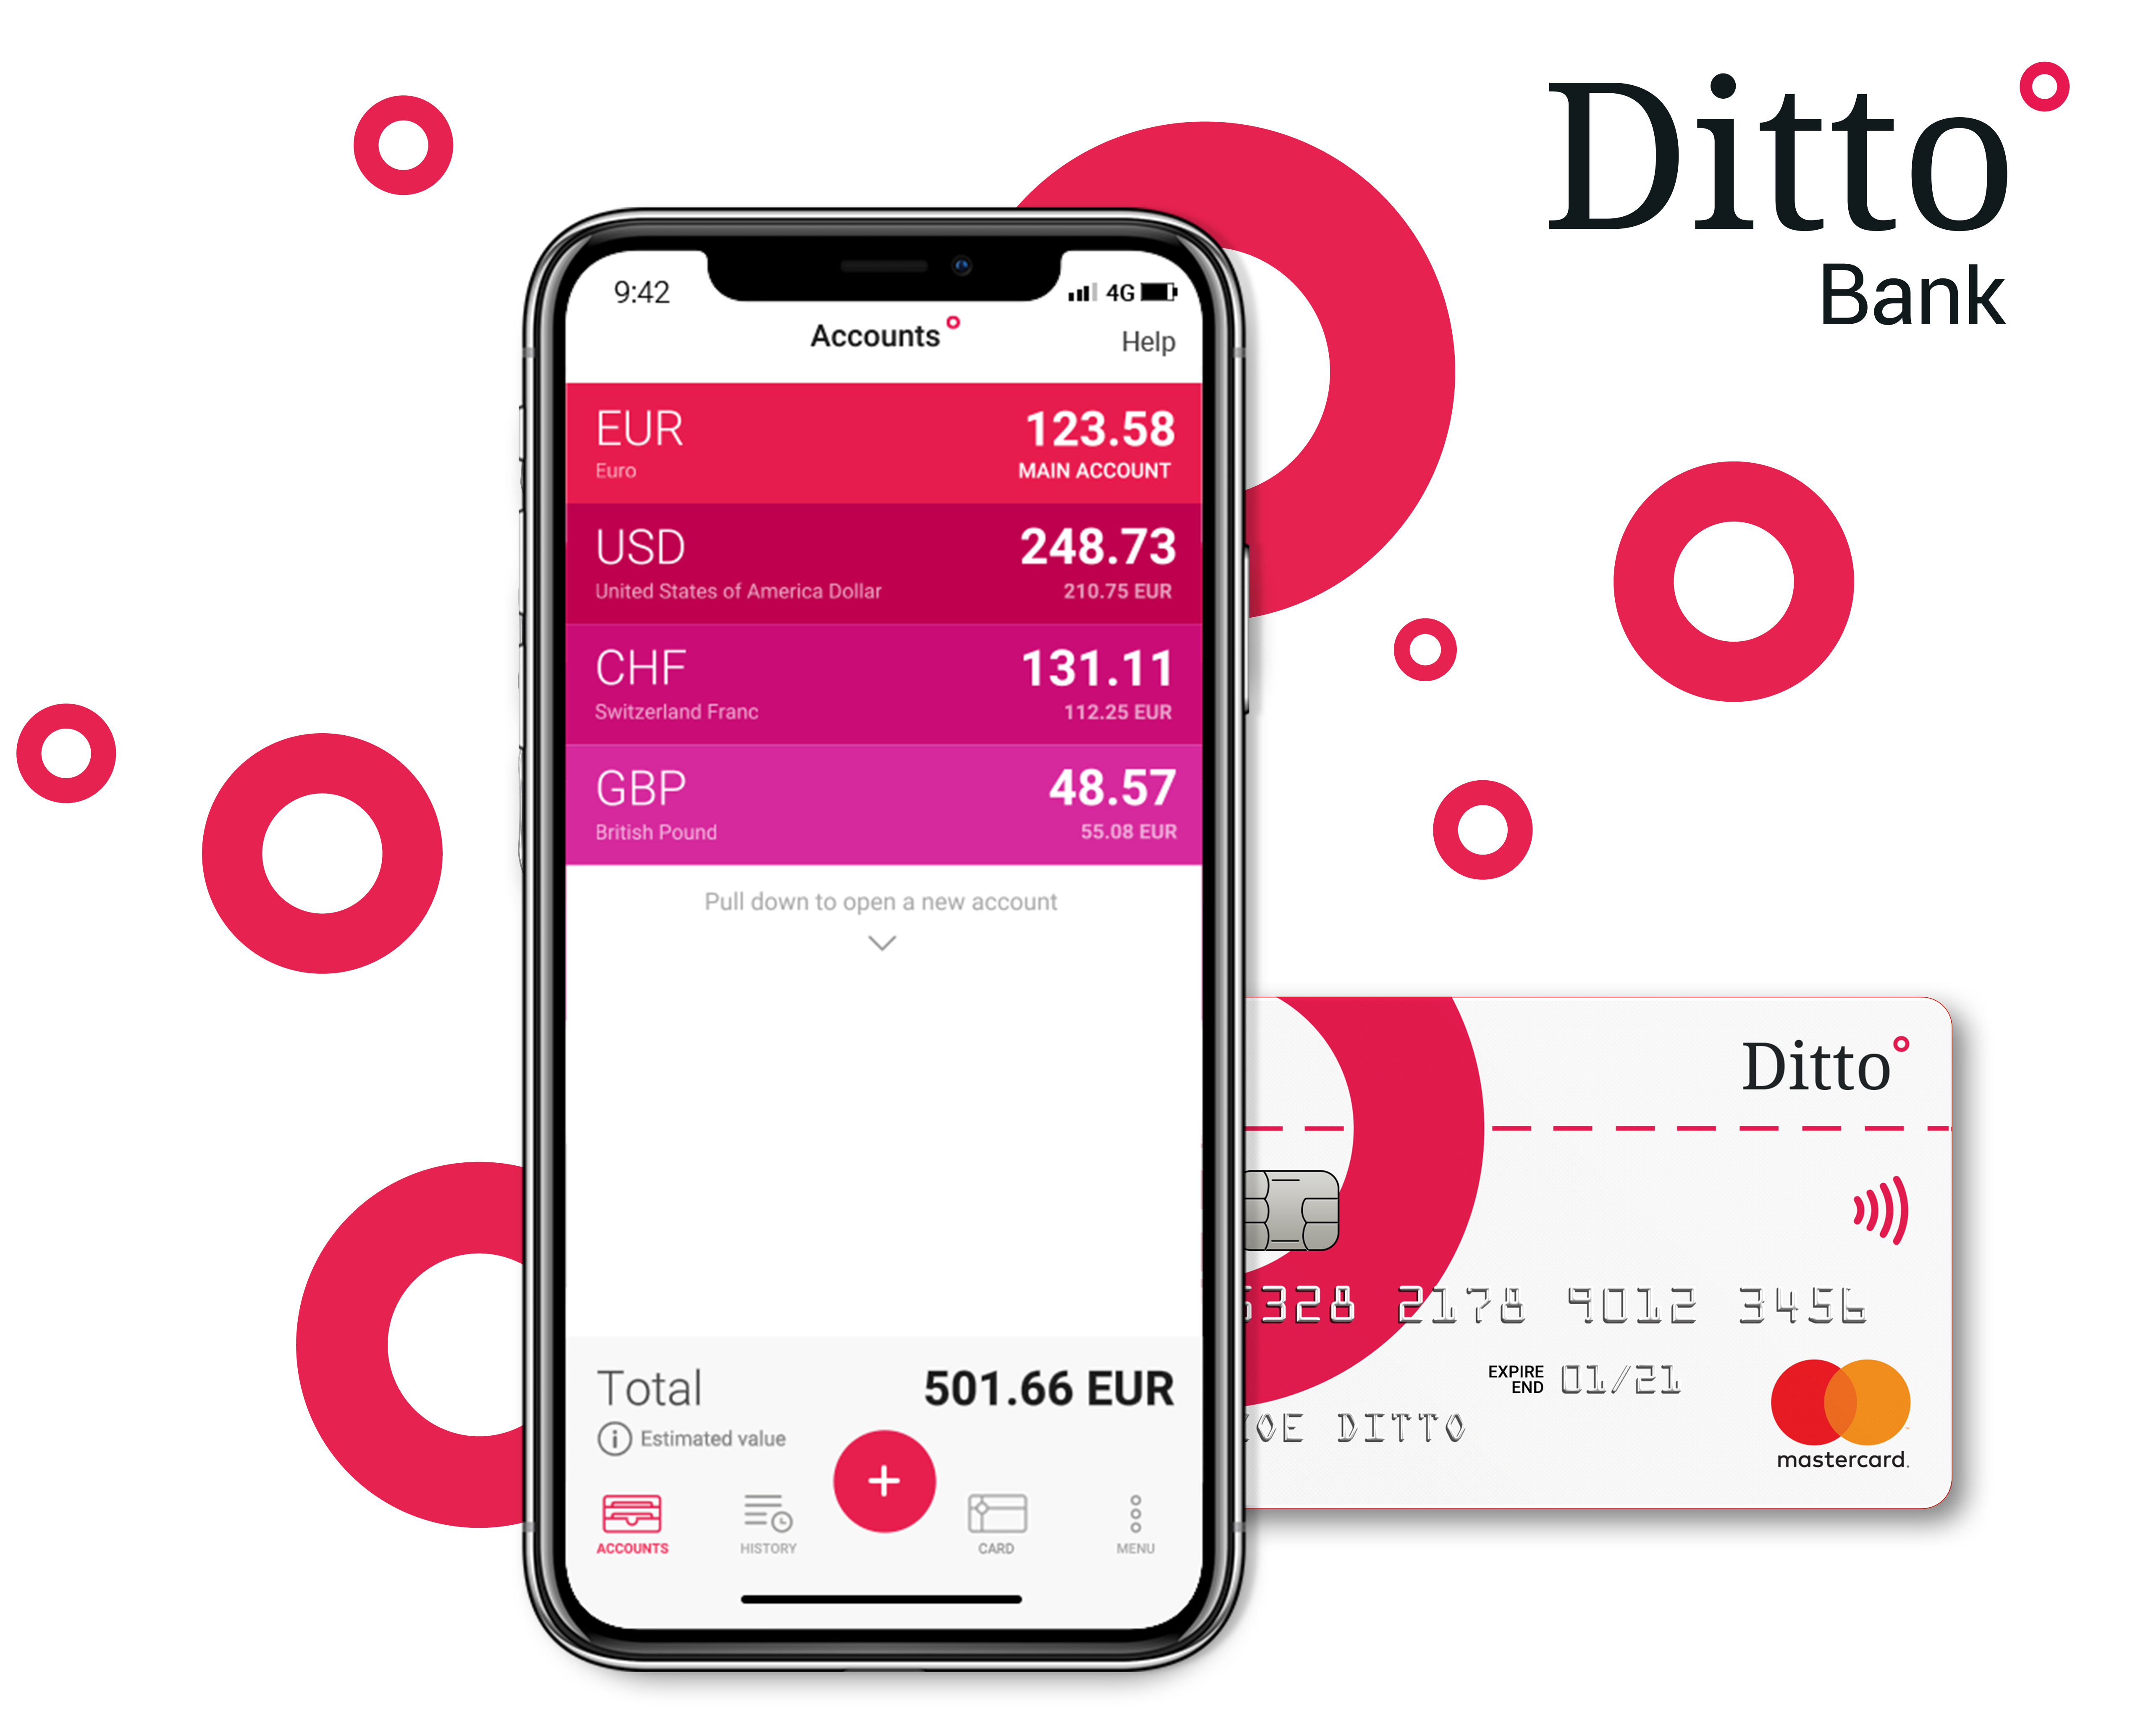 Ditto Bank, banque mobile française nouvelle génération, officialise son lancement commercial